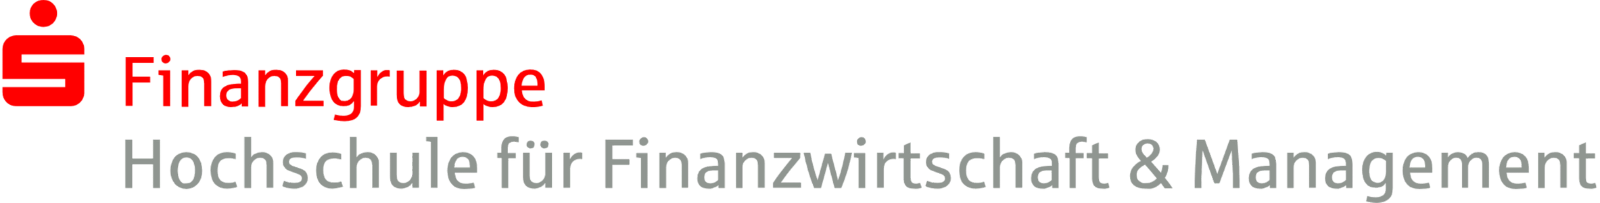 Werkstudent (m/w/d) im wissenschaftlichen Bereich - Hochschule für Finanzwirtschaft und Management GmbH - Logo